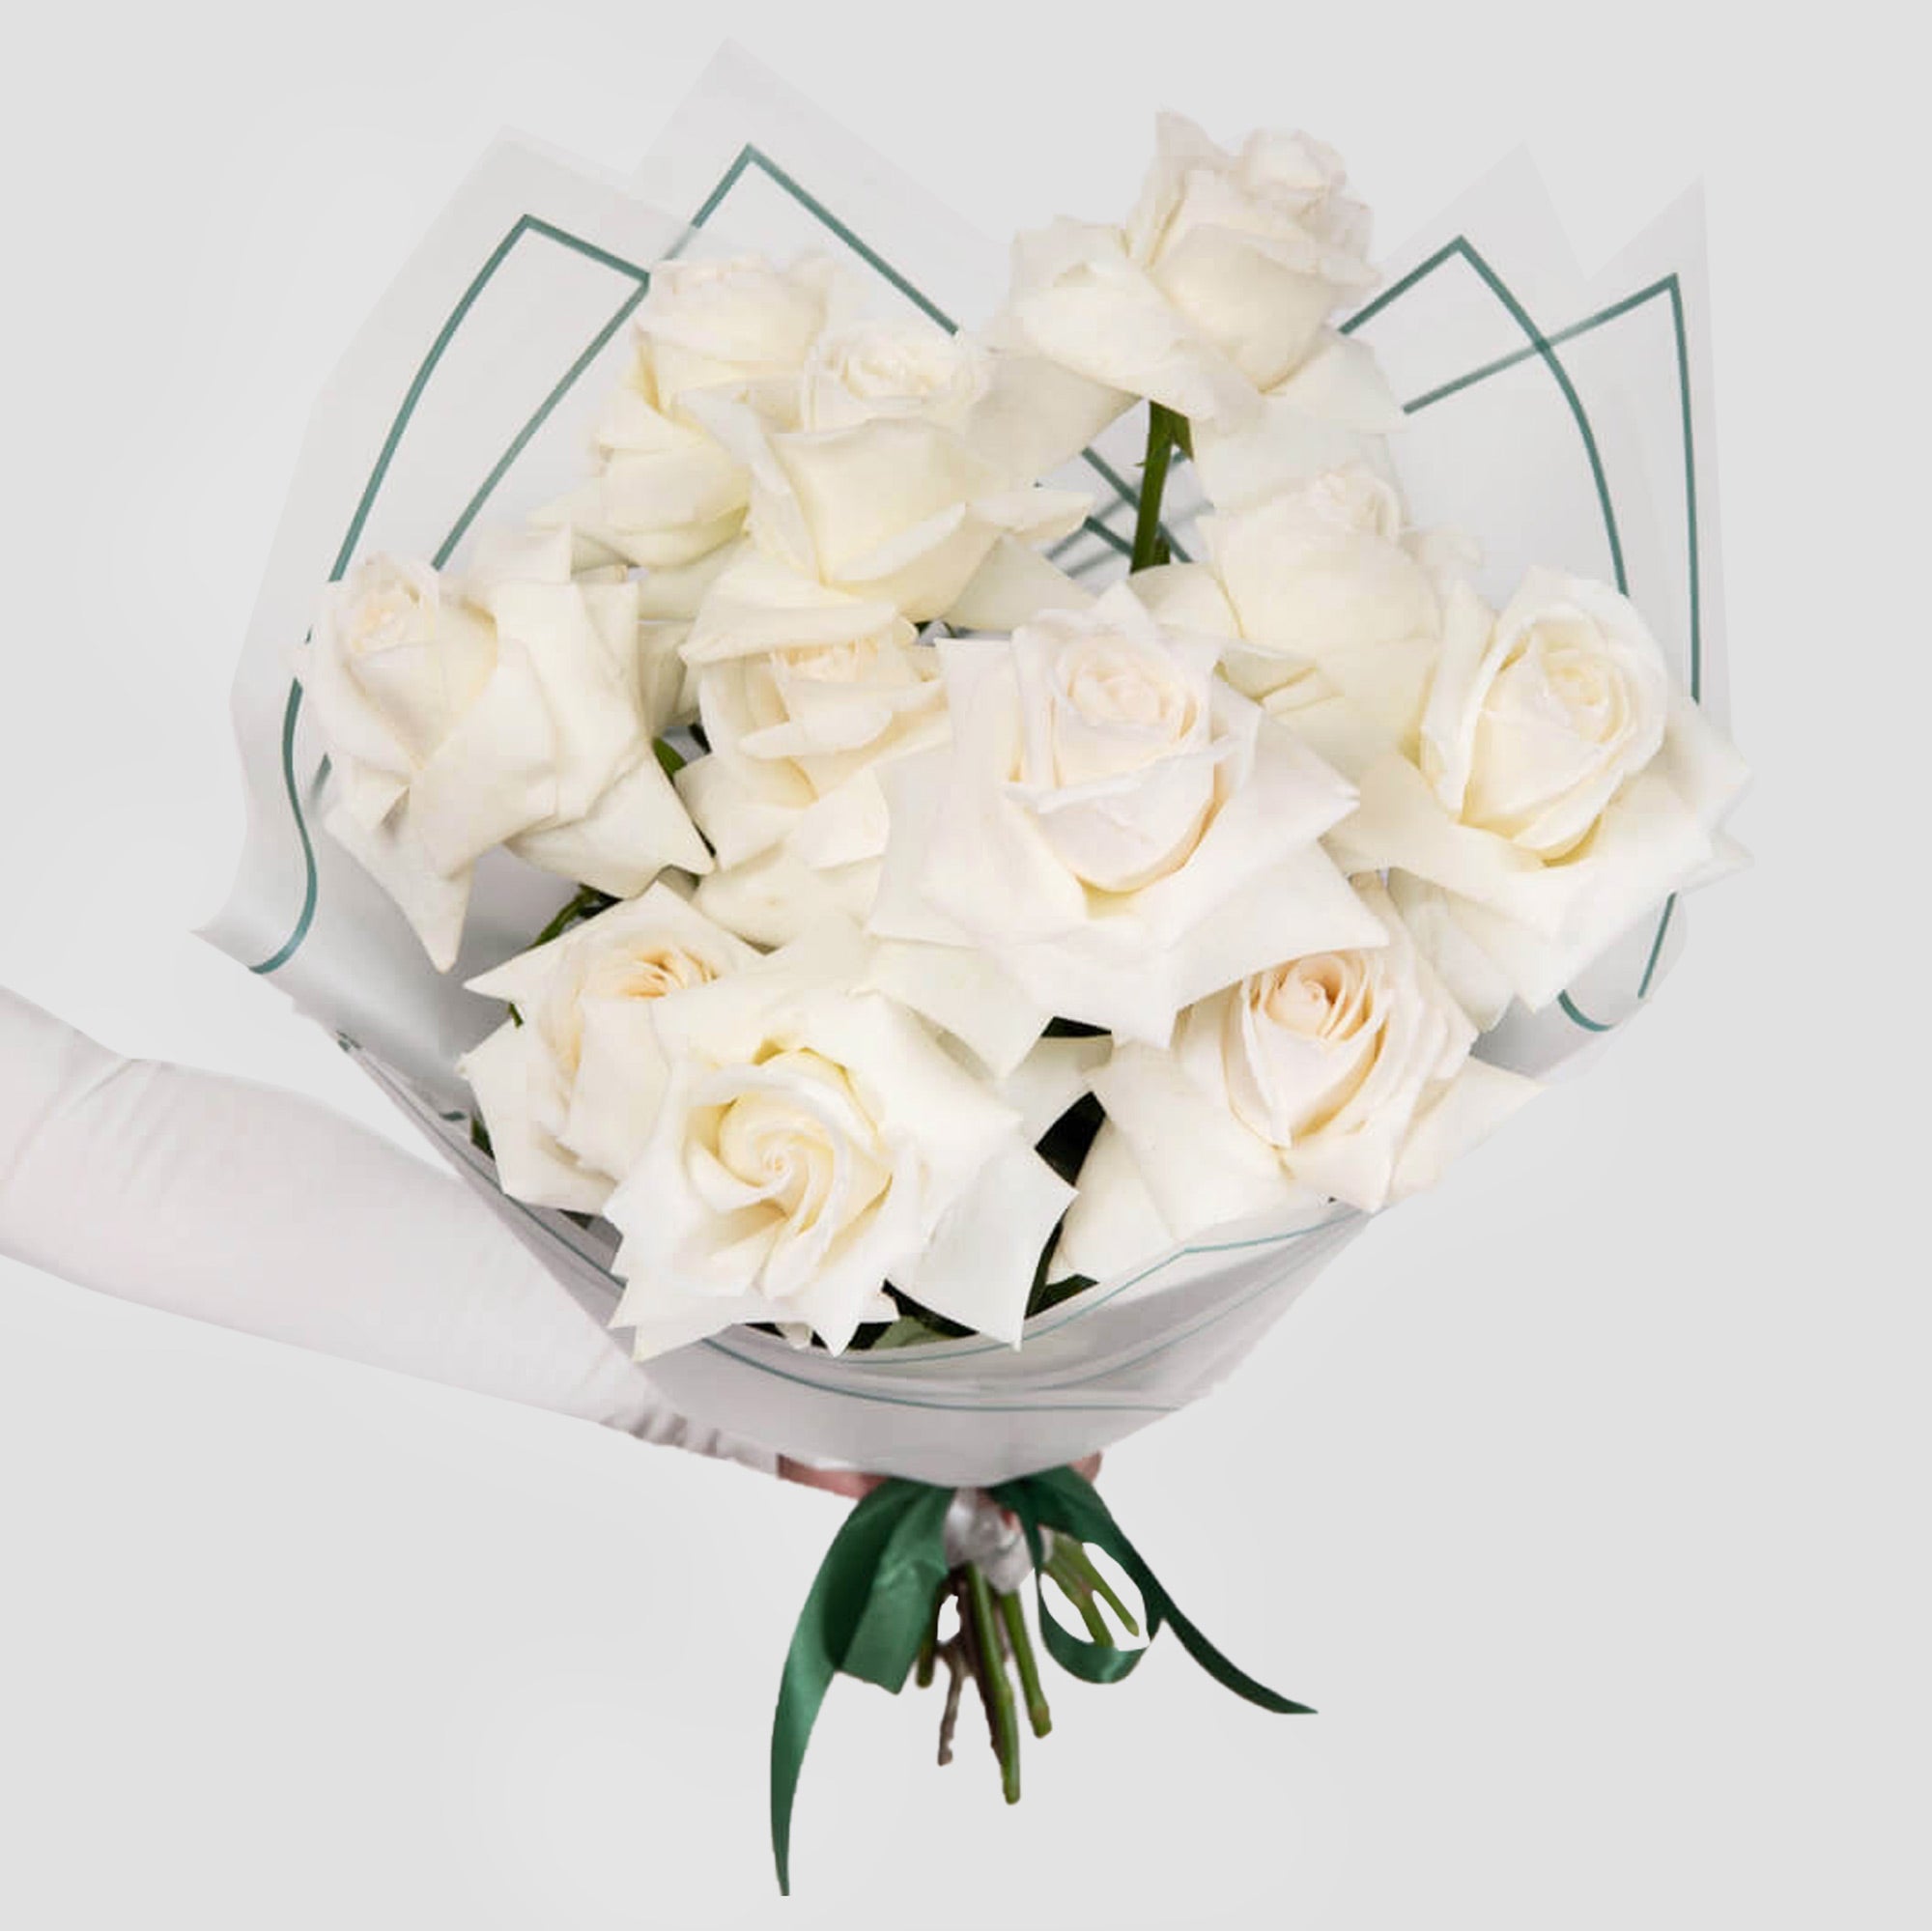 Buchet cu 11 trandafiri speciali albi